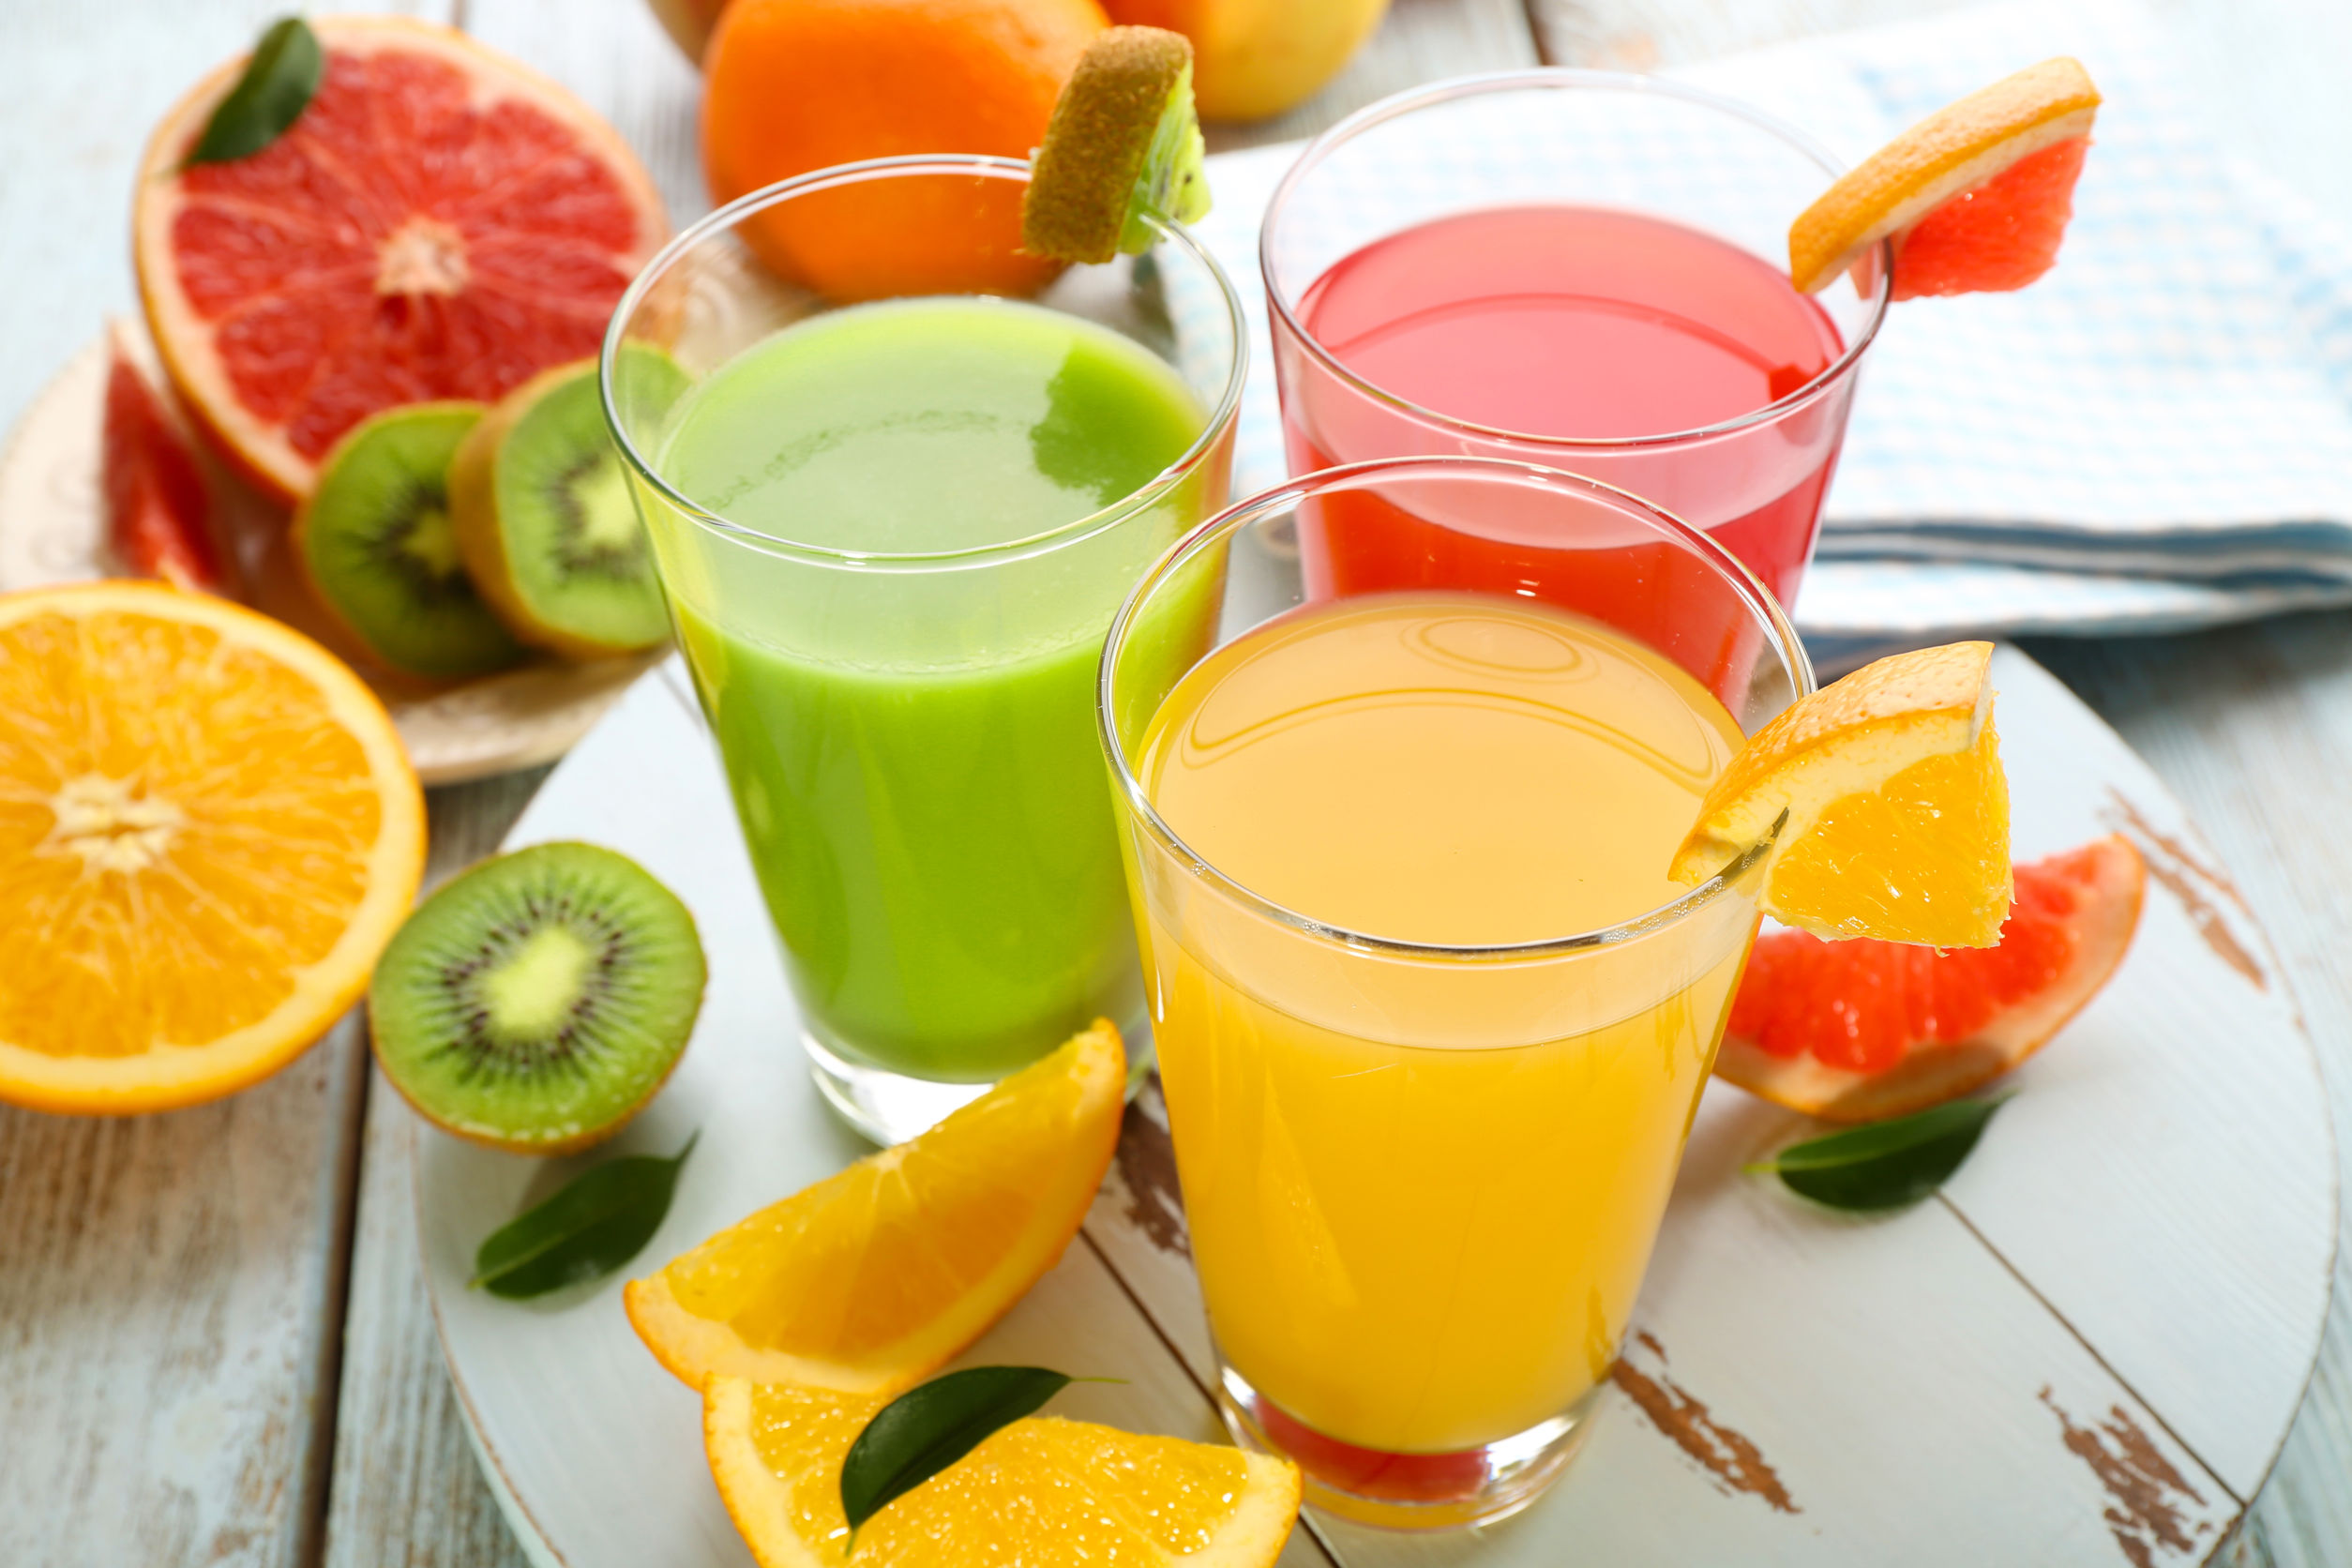 Is Fruit Juice Healthy?